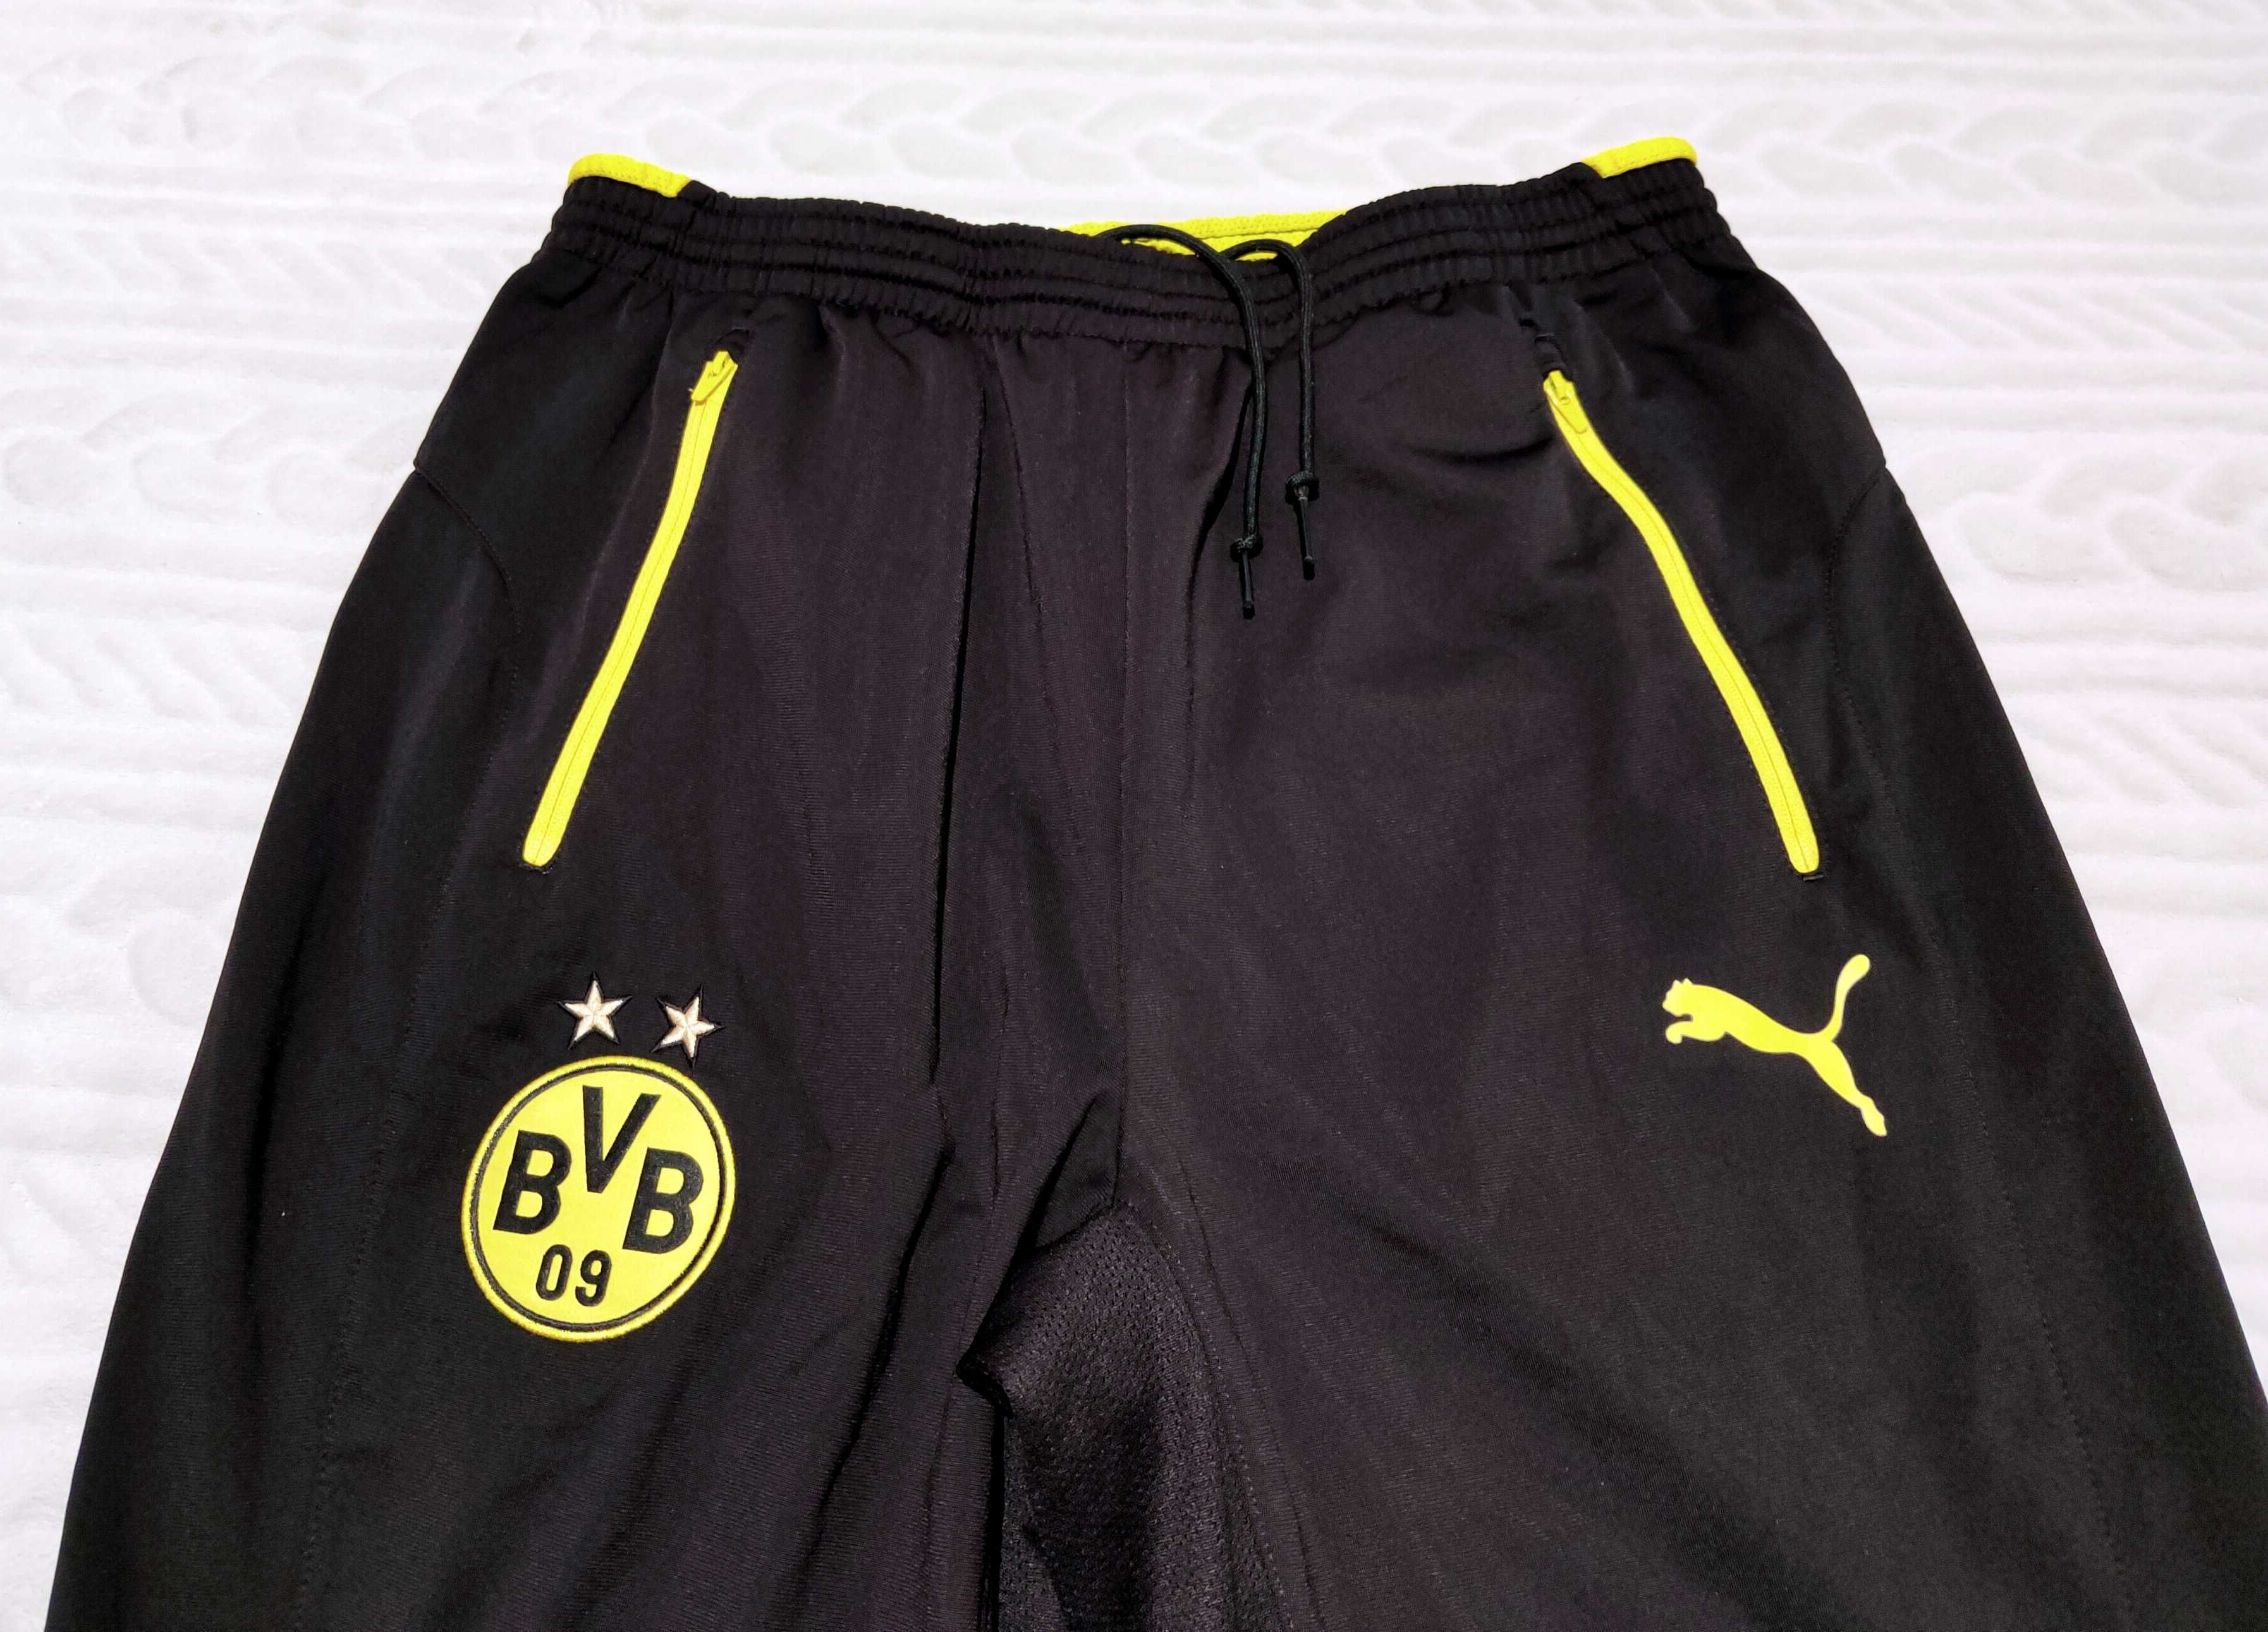 BVB Borussia Dortmund Oryginalne spodnie klubowa PUMA roz M/L